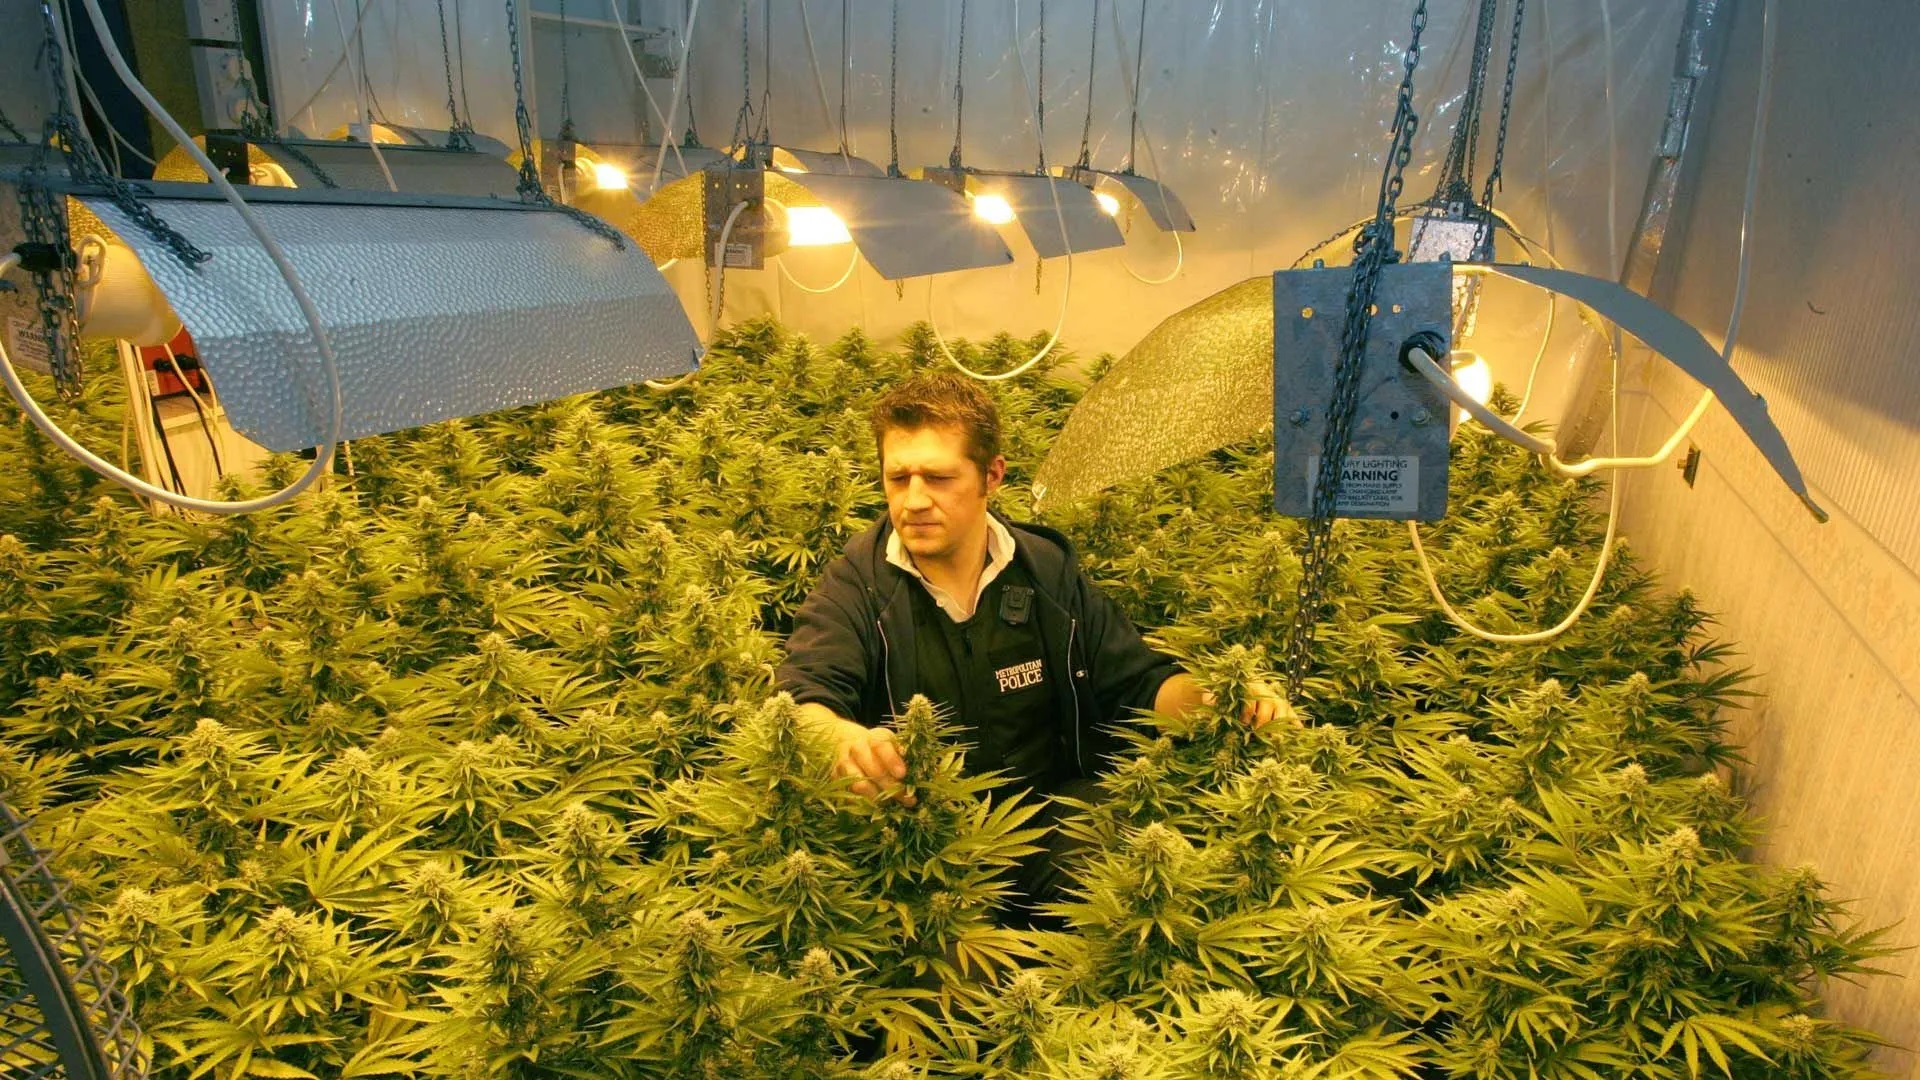 A cannabis farm in a tenant's home